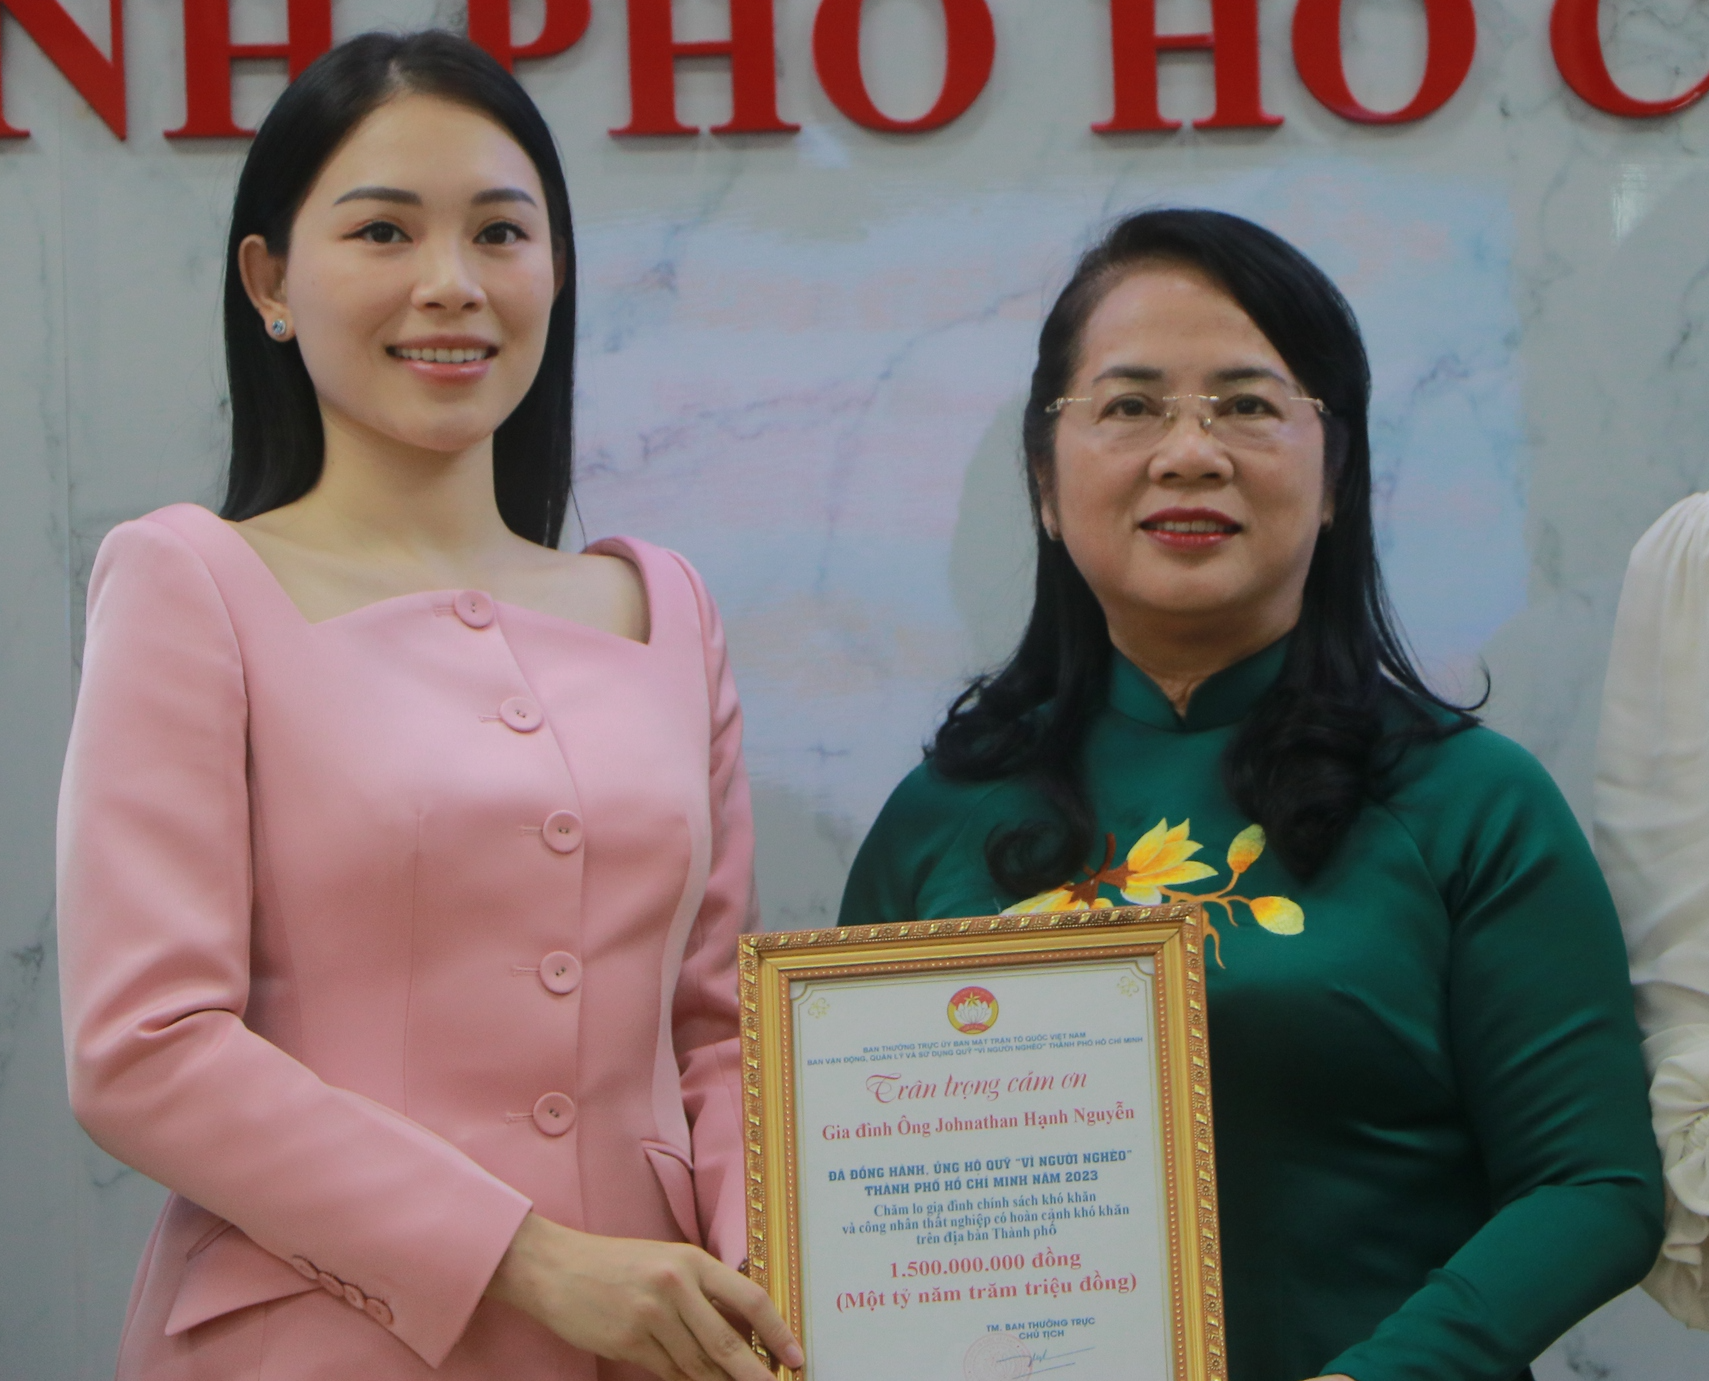 Hoãn đám cưới tại Việt Nam, gia đình ông Johnathan Hạnh Nguyễn ủng hộ 1,5 tỷ đồng cho MTTQ TP.HCM - Ảnh 3.